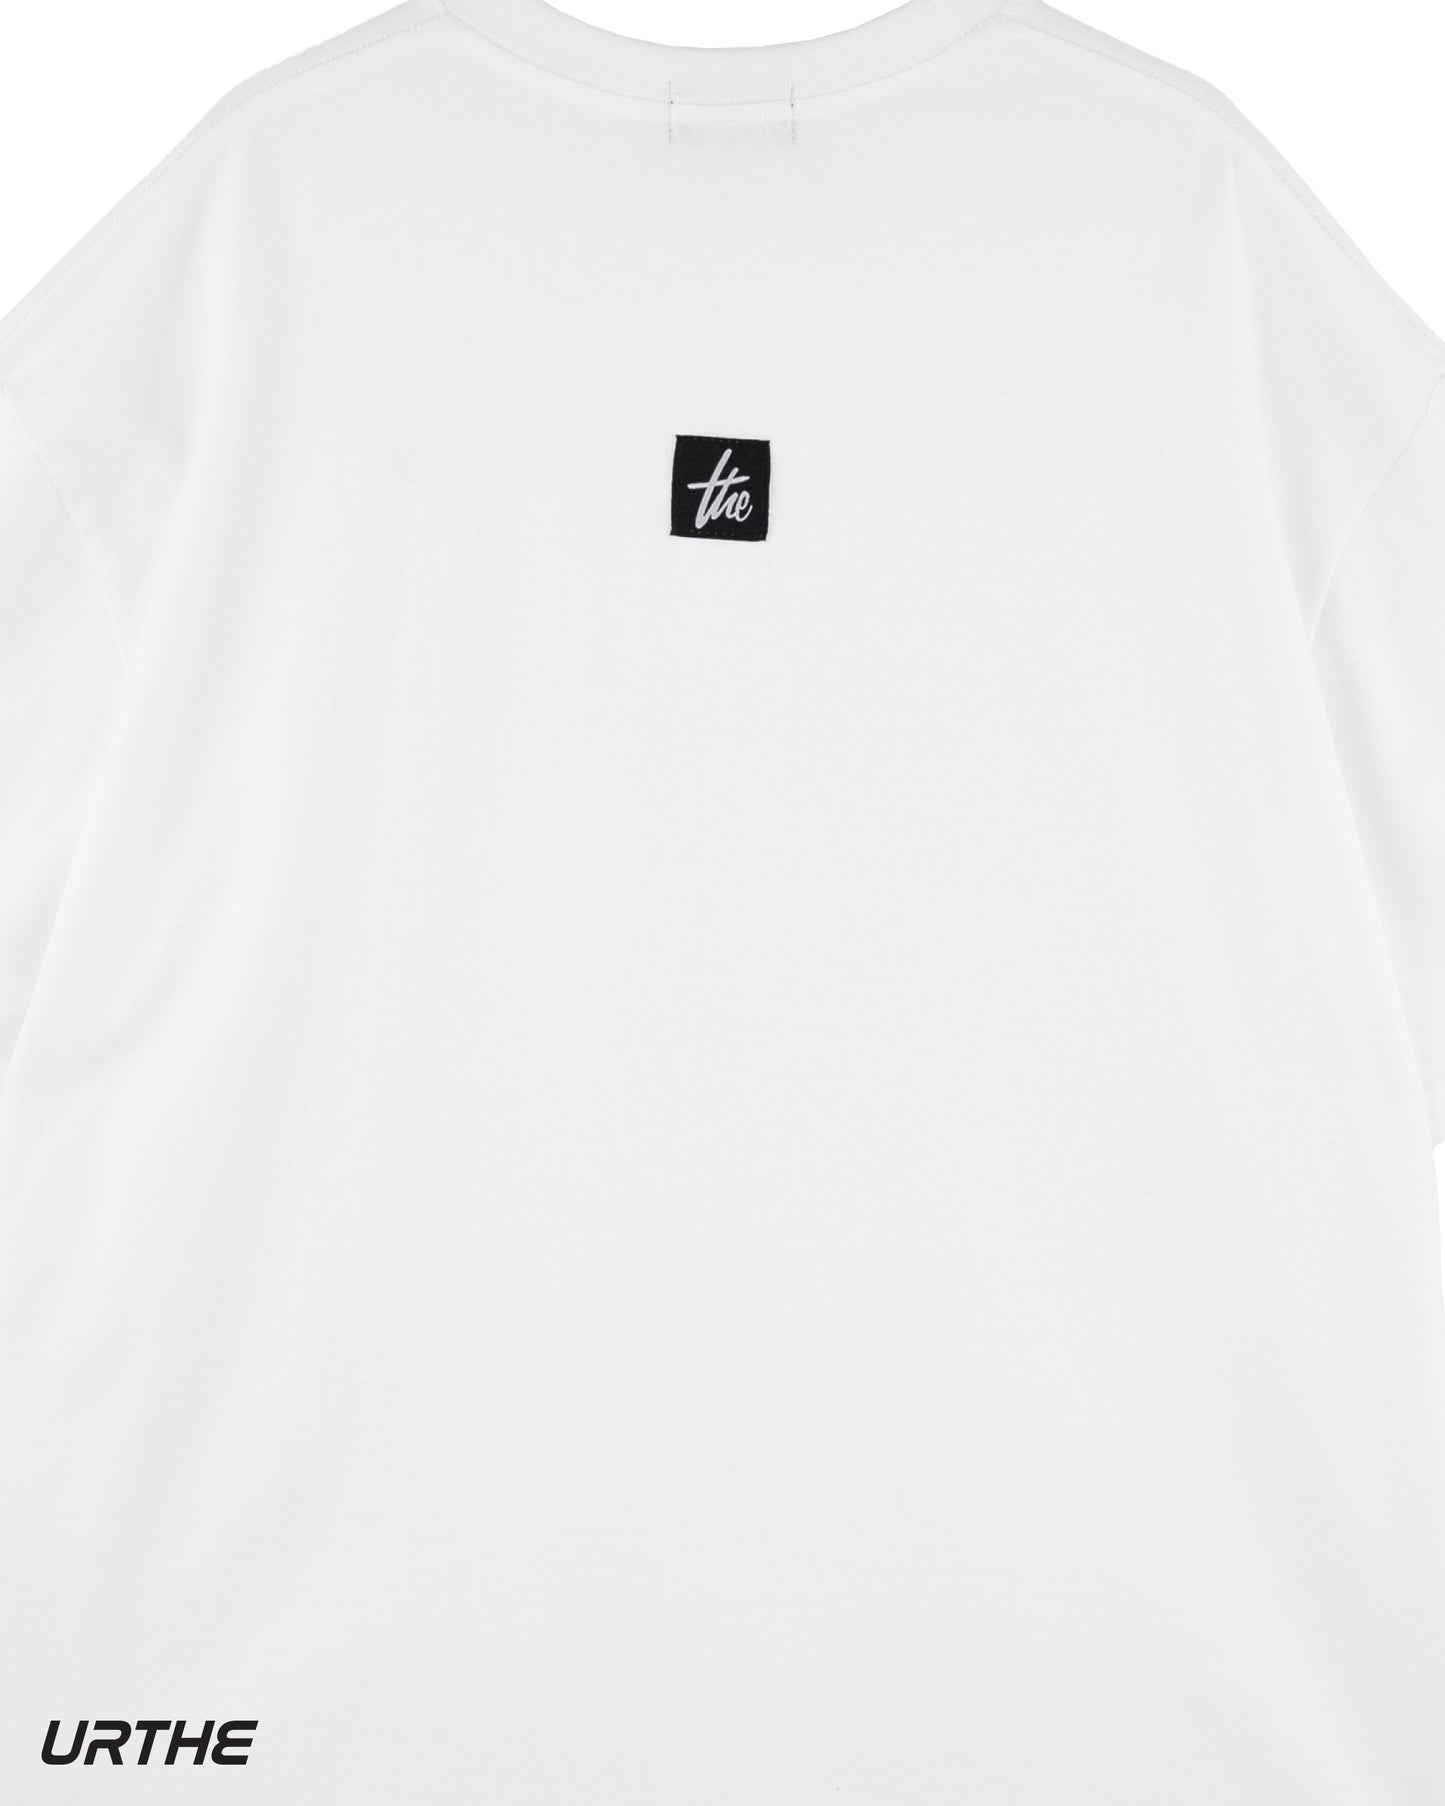 URTHE - เสื้อยืด เเพ็ค 2 ตัว ดำ ขาว สกรีนลาย รุ่น COMBO SET 02